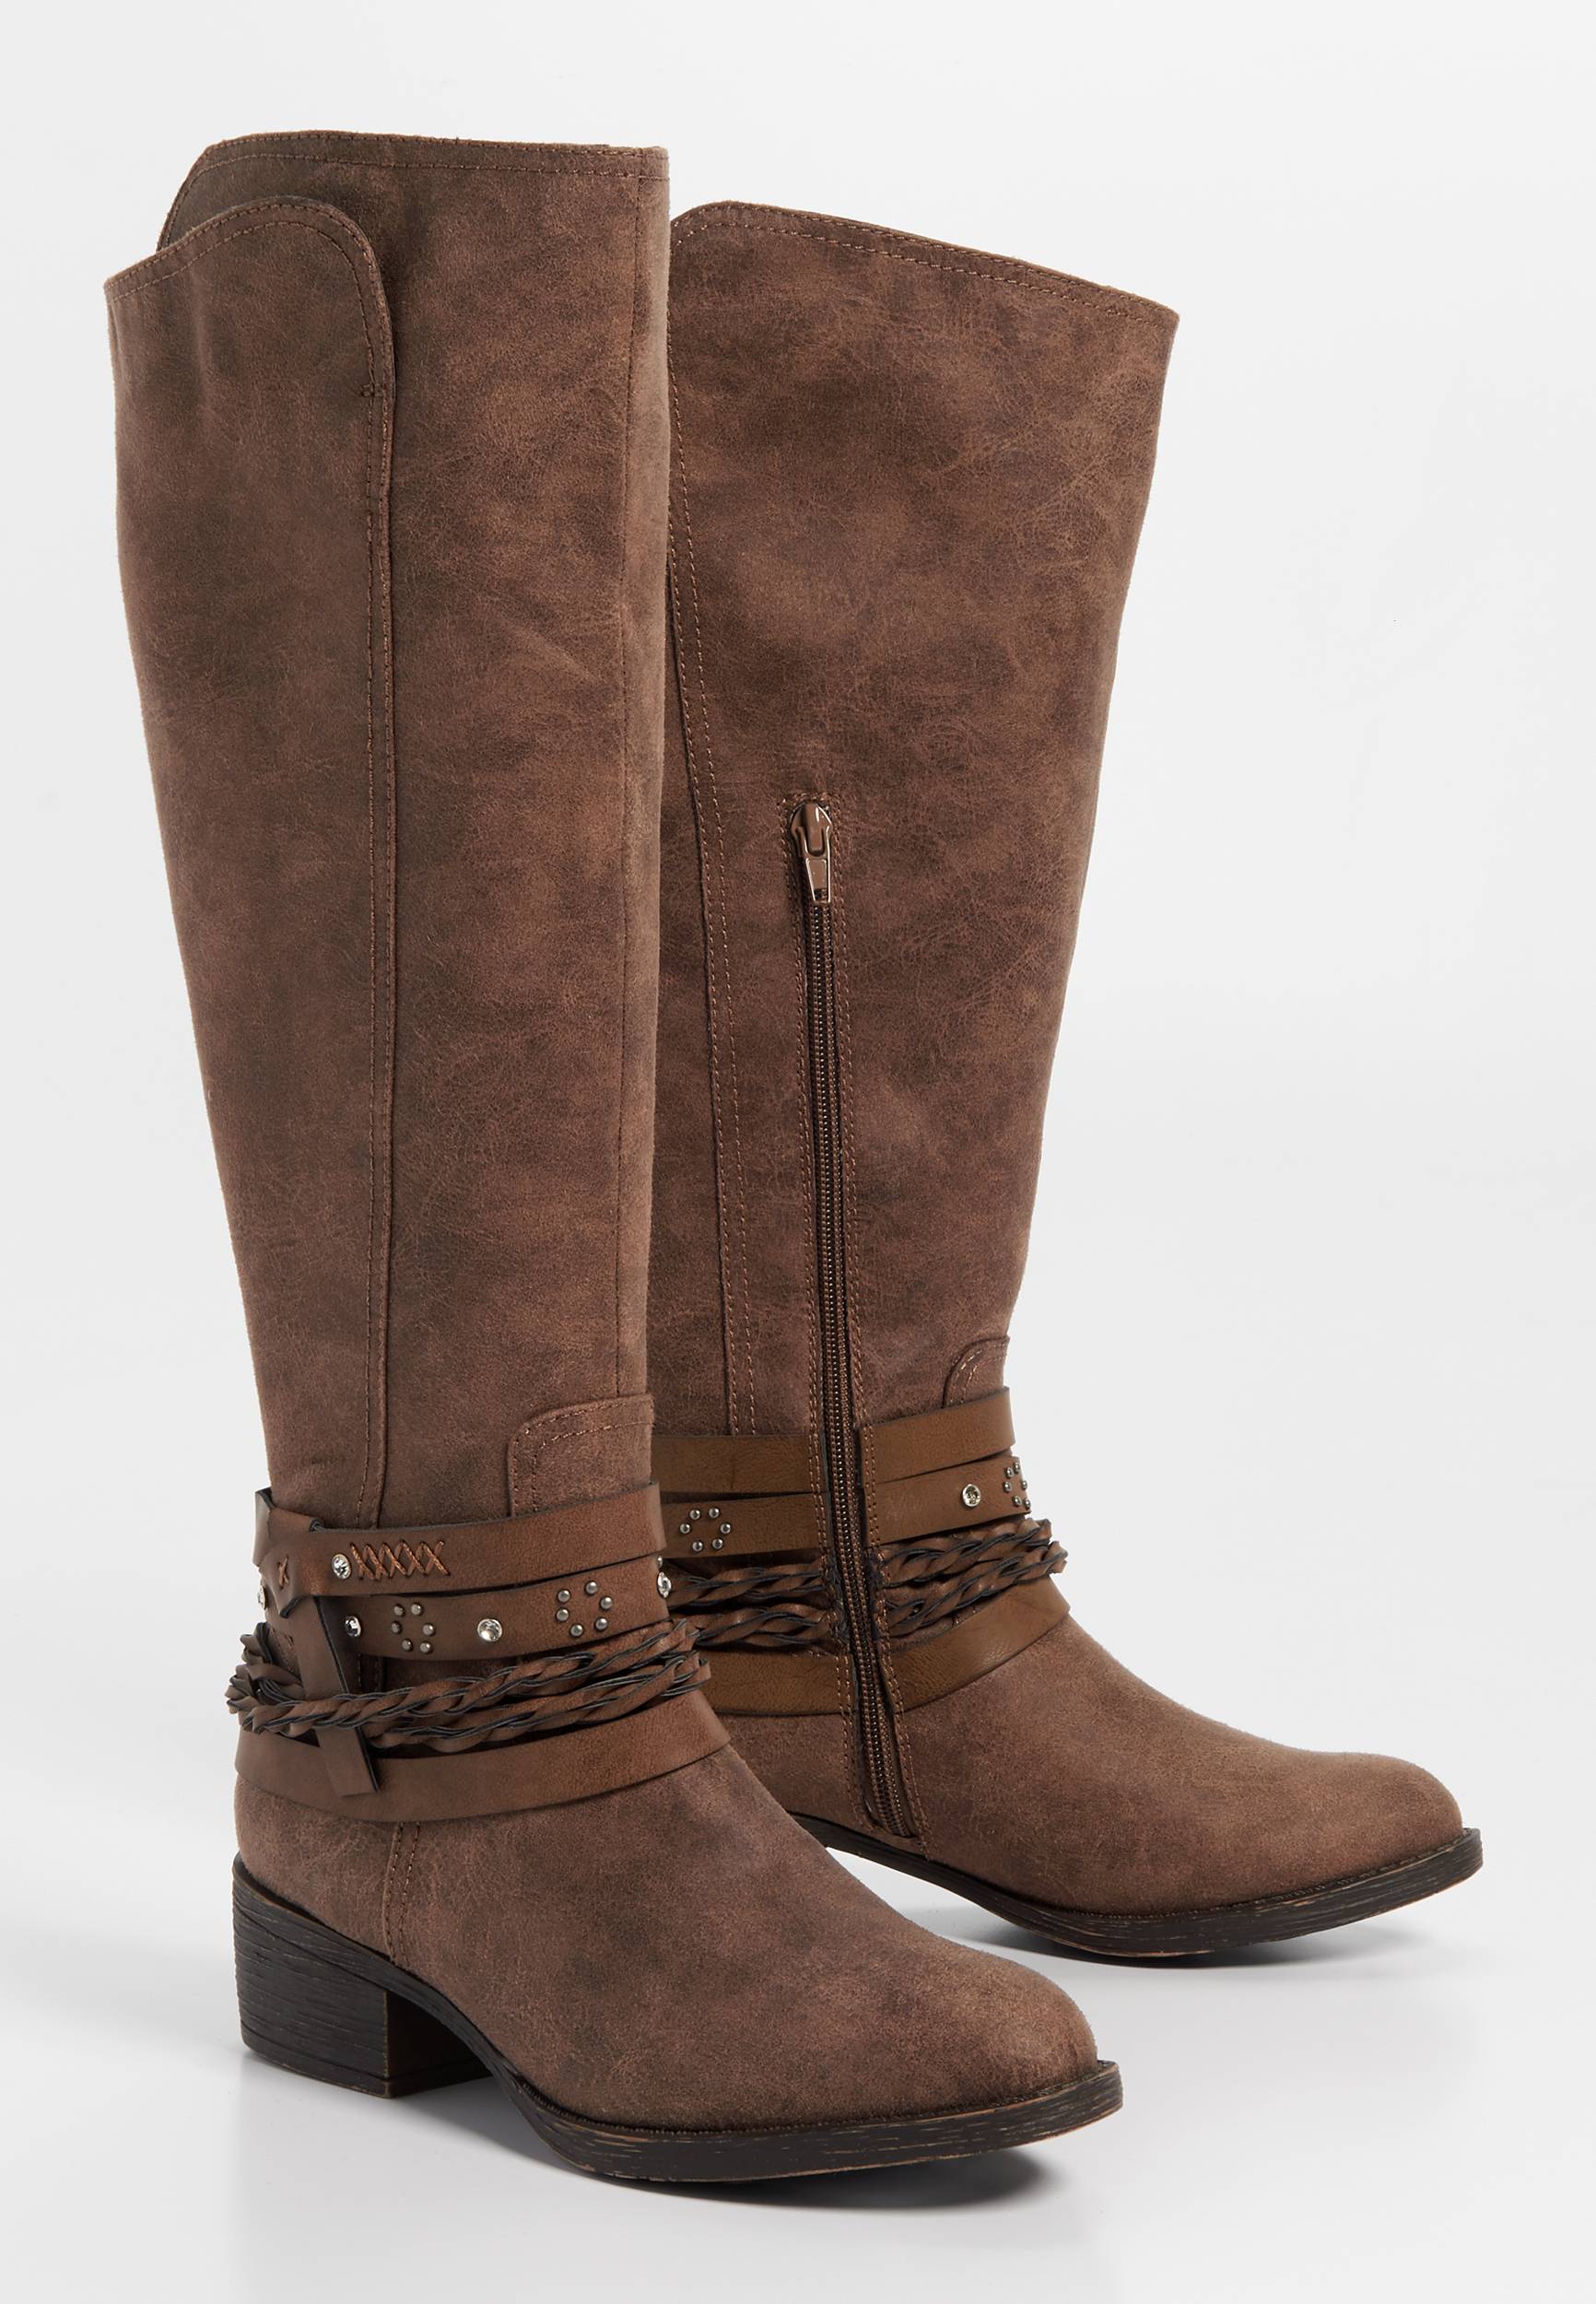 Gretchen western braid wrap boot | maurices